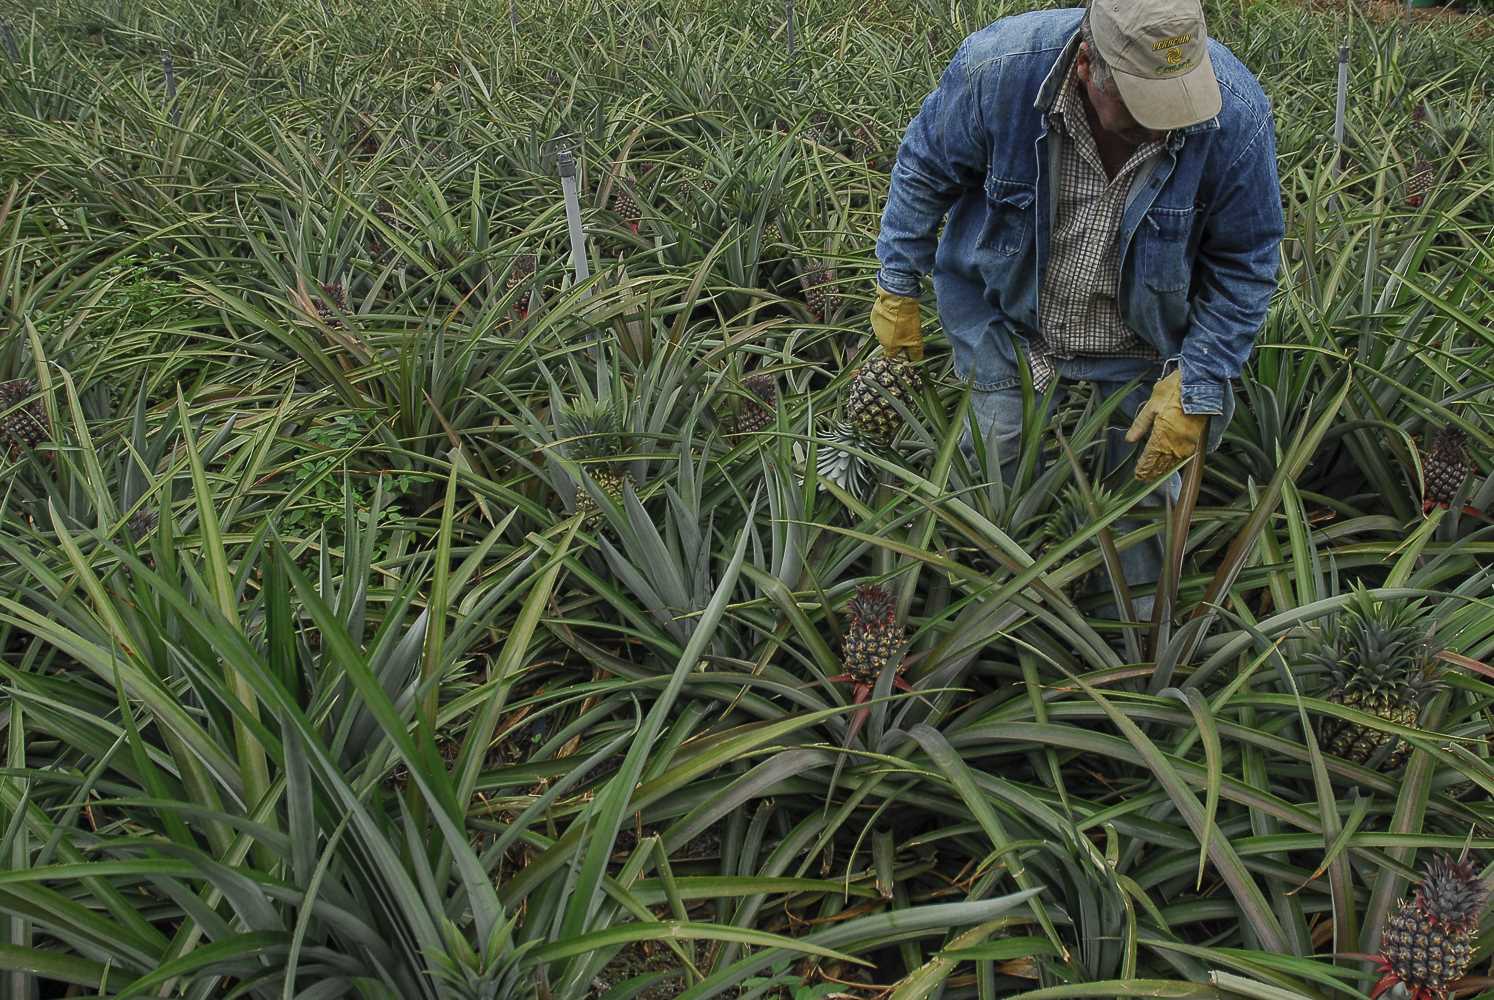 Cabildo El Hierro articula ayudas para paliar los daños de comercialización de productos tropicales